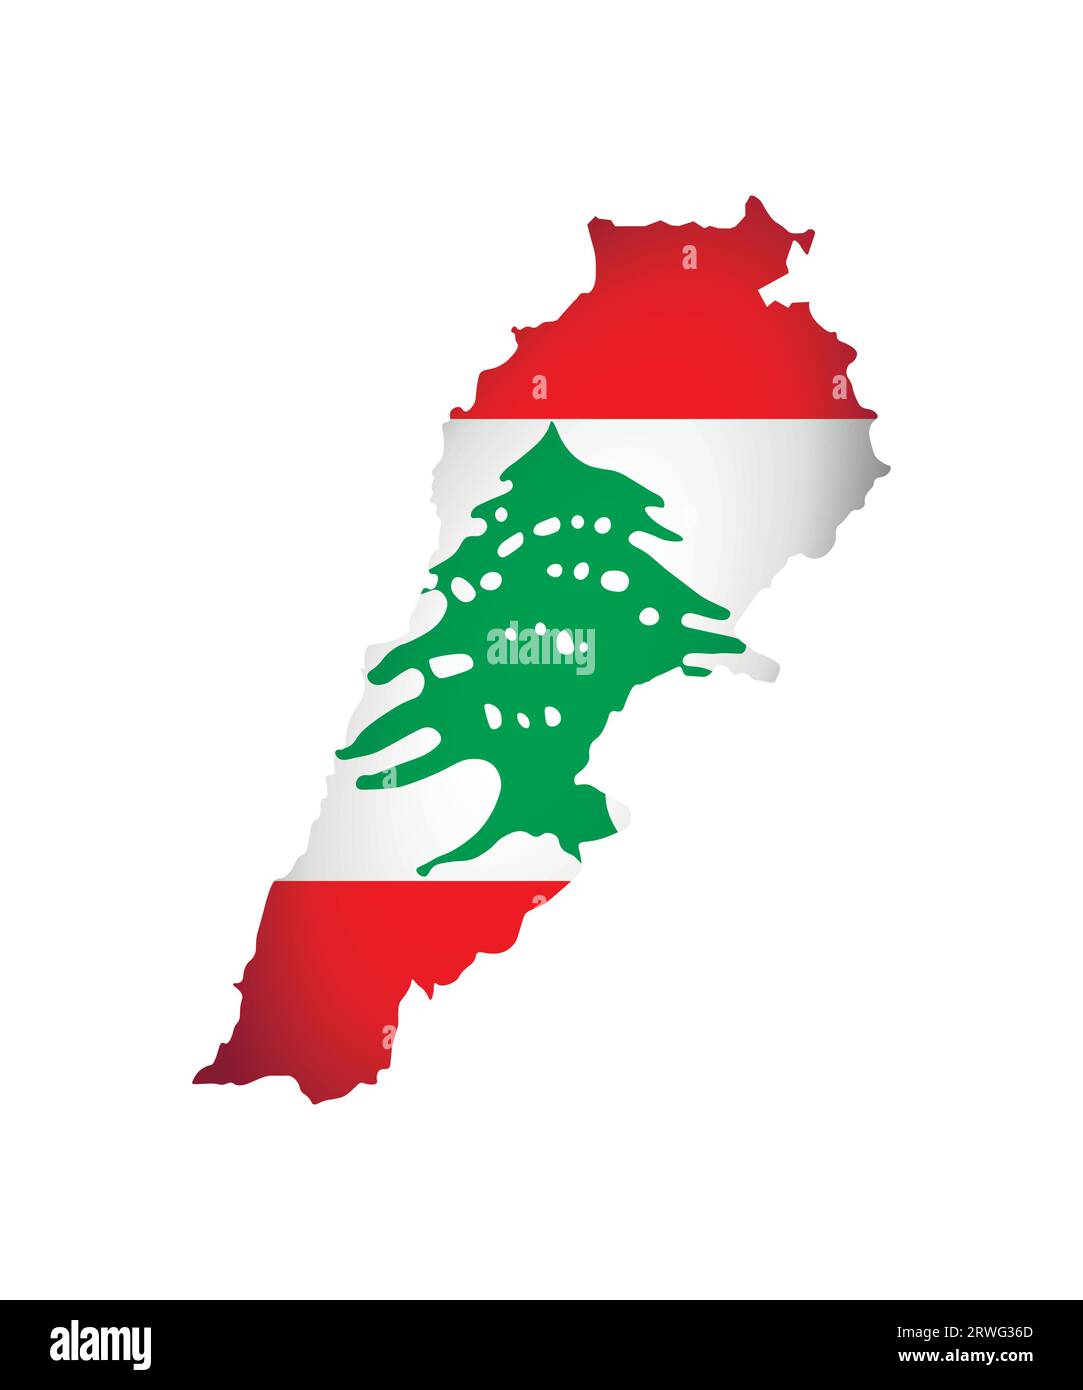 Vektorillustration mit Nationalflagge und Karte (vereinfachte Form) des Libanon (Libanesische Republik). Volume Shadow auf der Karte. Stock Vektor